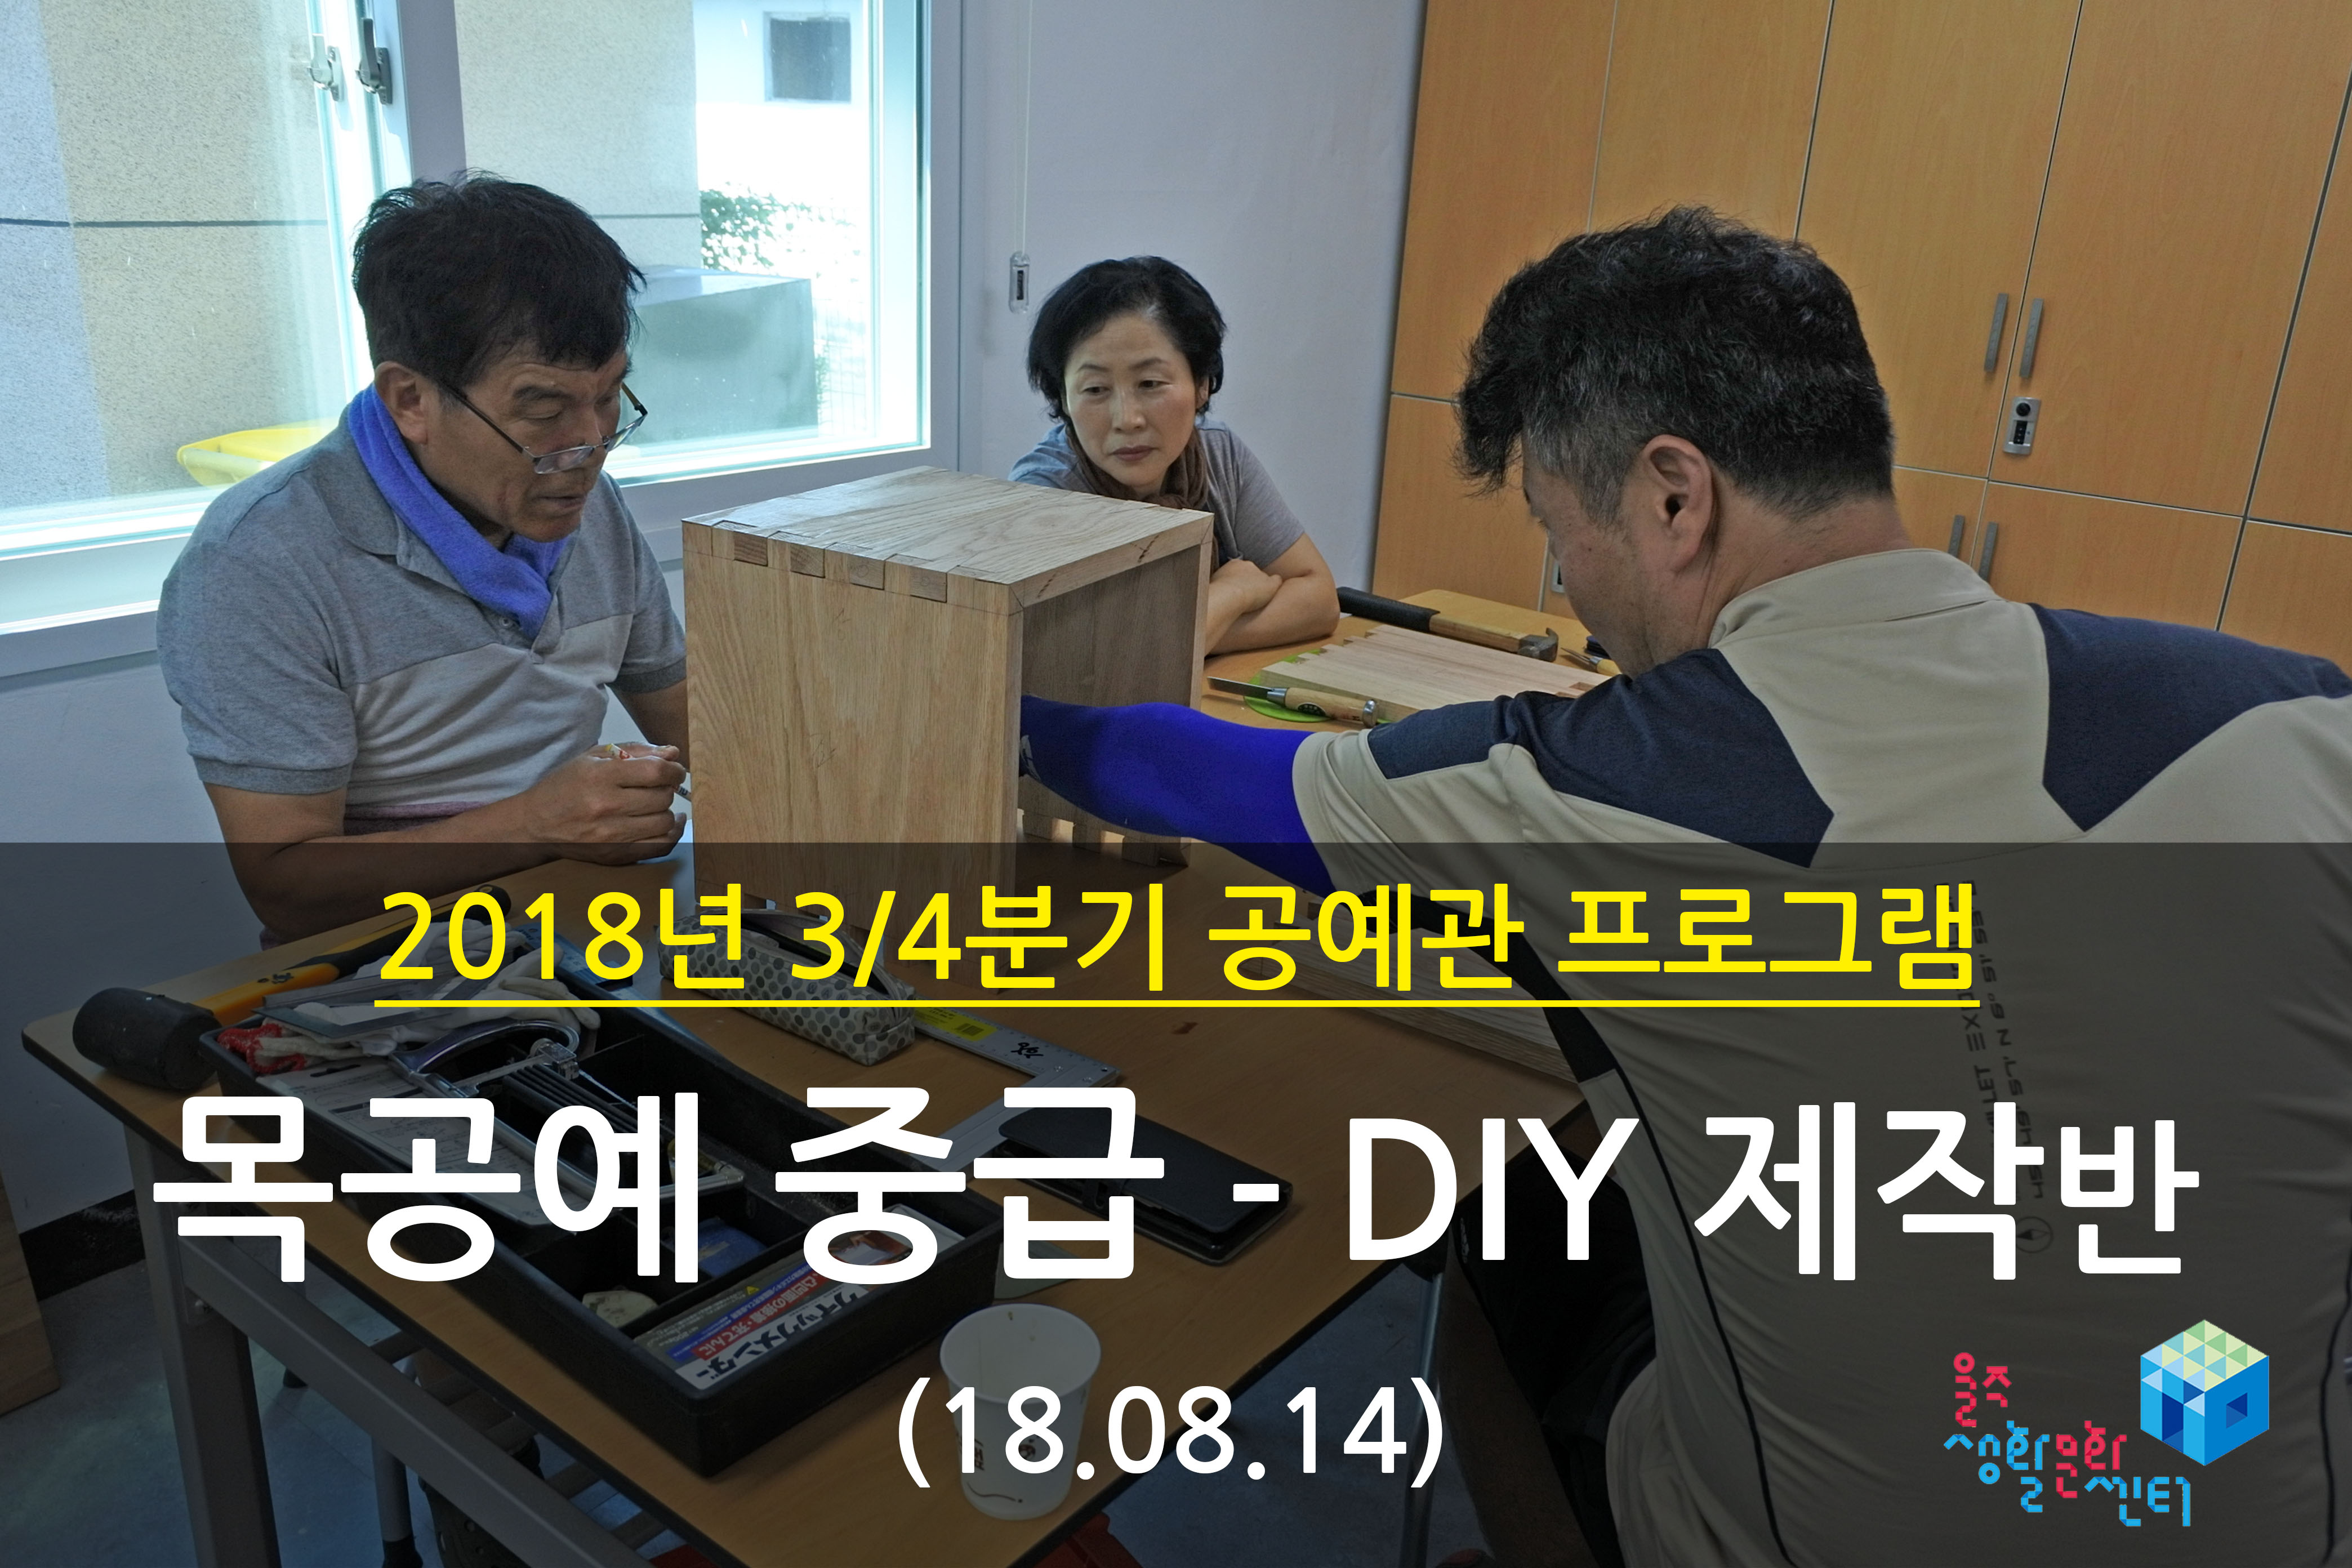 2018.08.14 _ 목공예 중급 - DIY 제작반 _ 3/4분기 6주차 수업